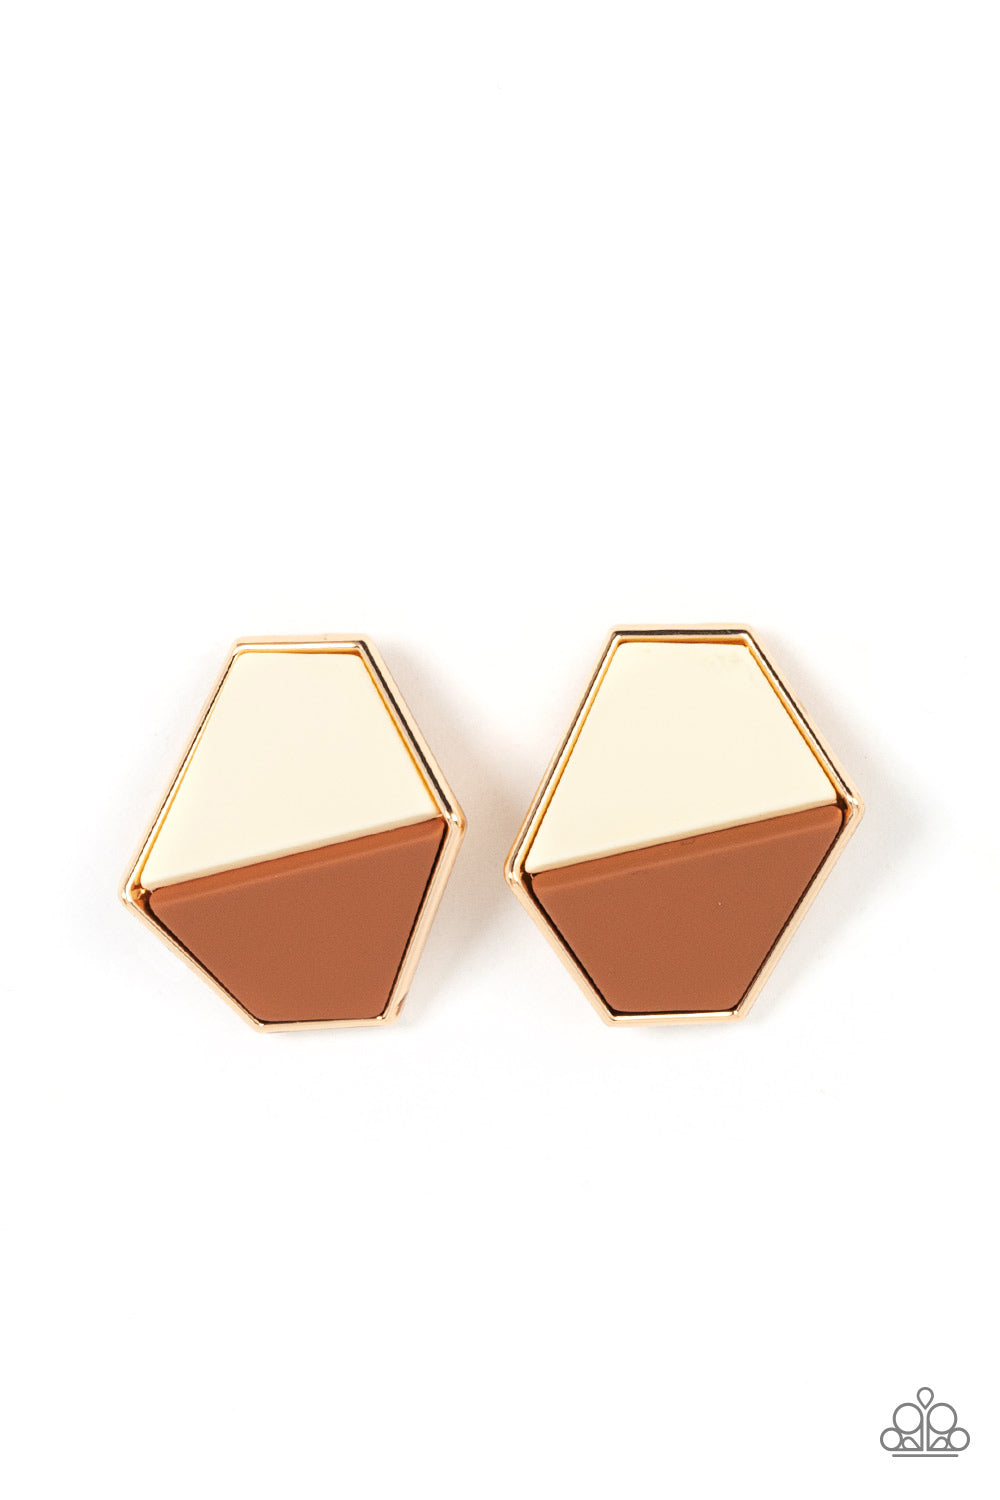 Generically Geometric Brown- Earrings